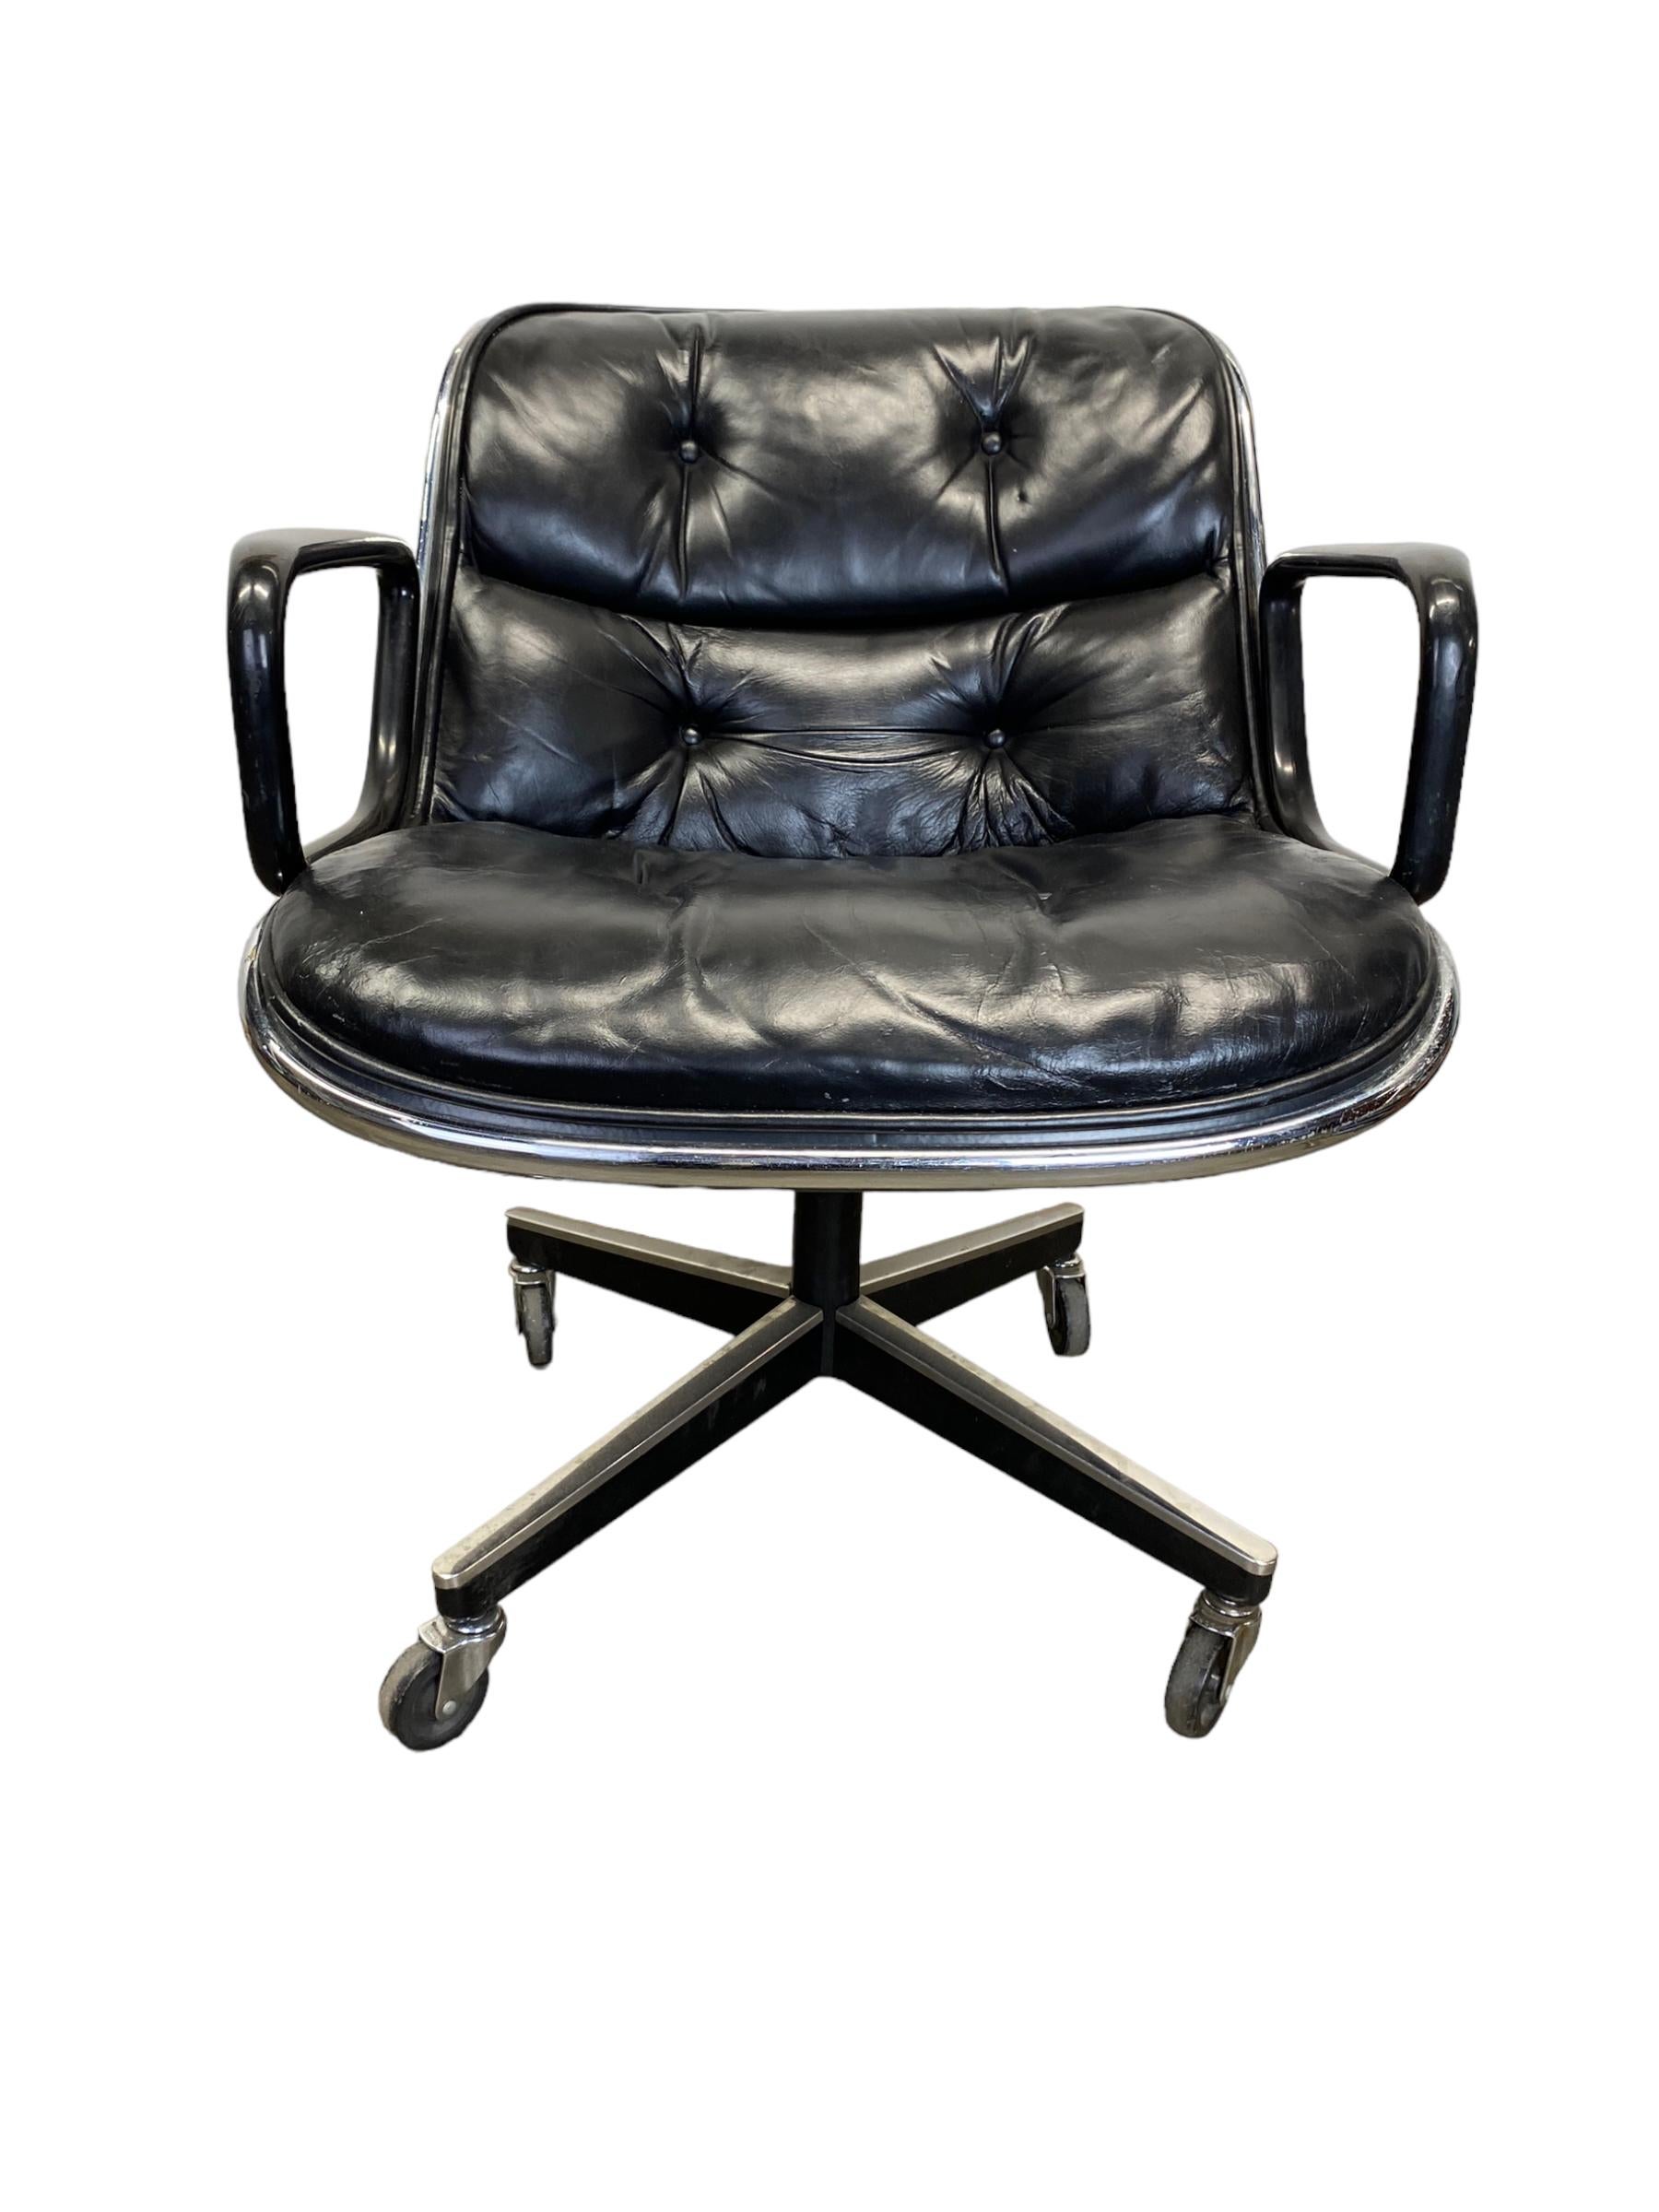 Vintage Charles Pollock for Knoll executive chair in black blue leather. Ce fauteuil de bureau de direction est doté d'une base pivotante et d'un réglage manuel de la hauteur. Condit avec toutes les roues en état de marche. Bon état vintage, usure